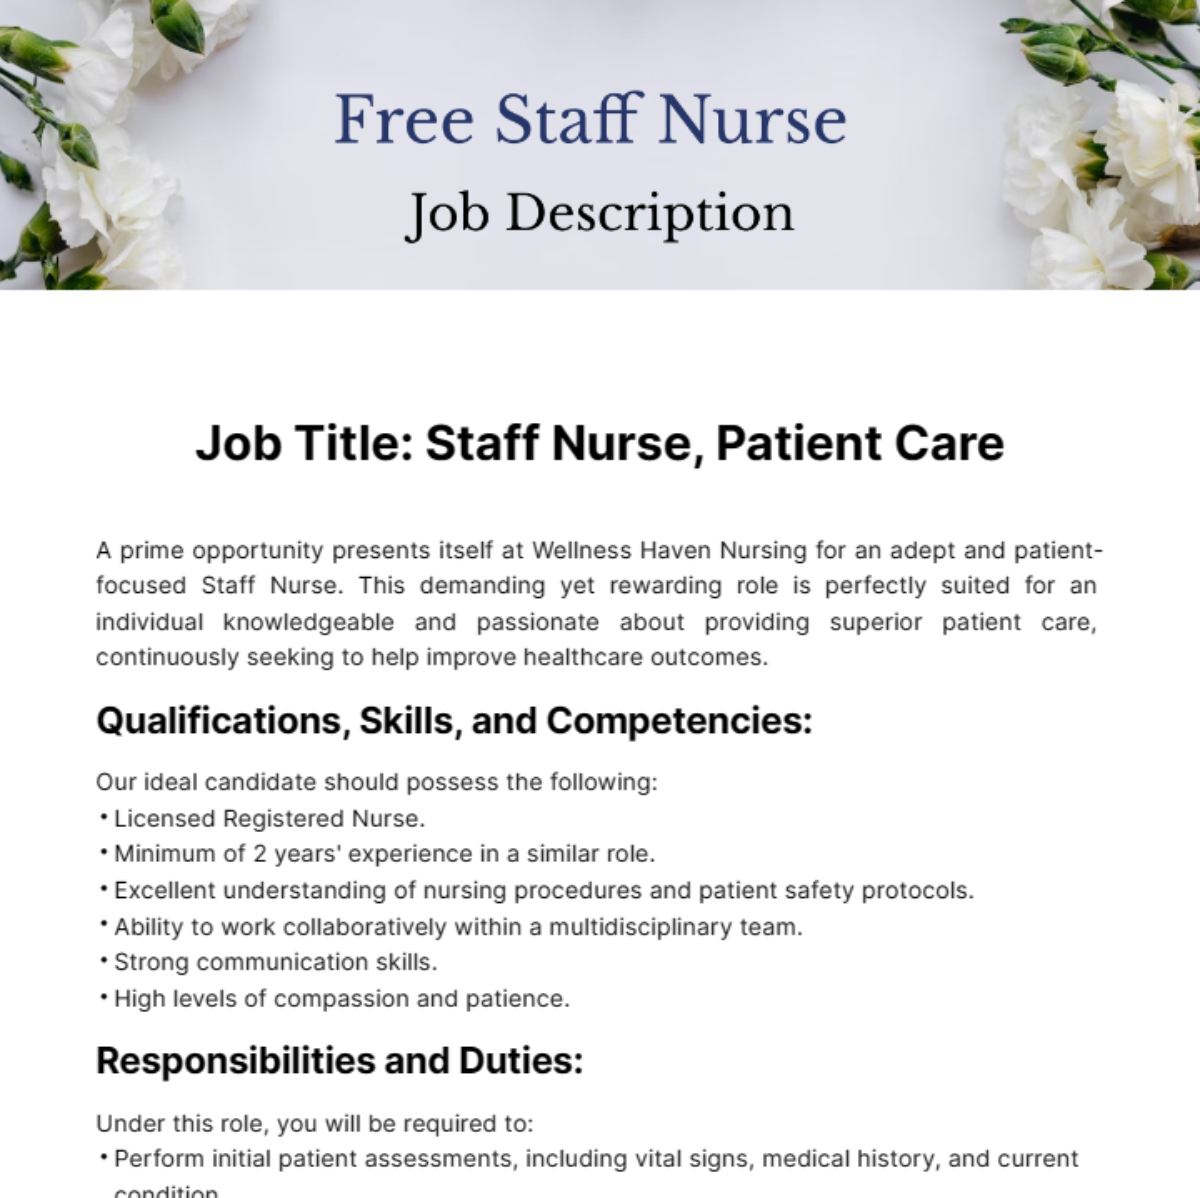 Free Staff Nurse Job Description Template